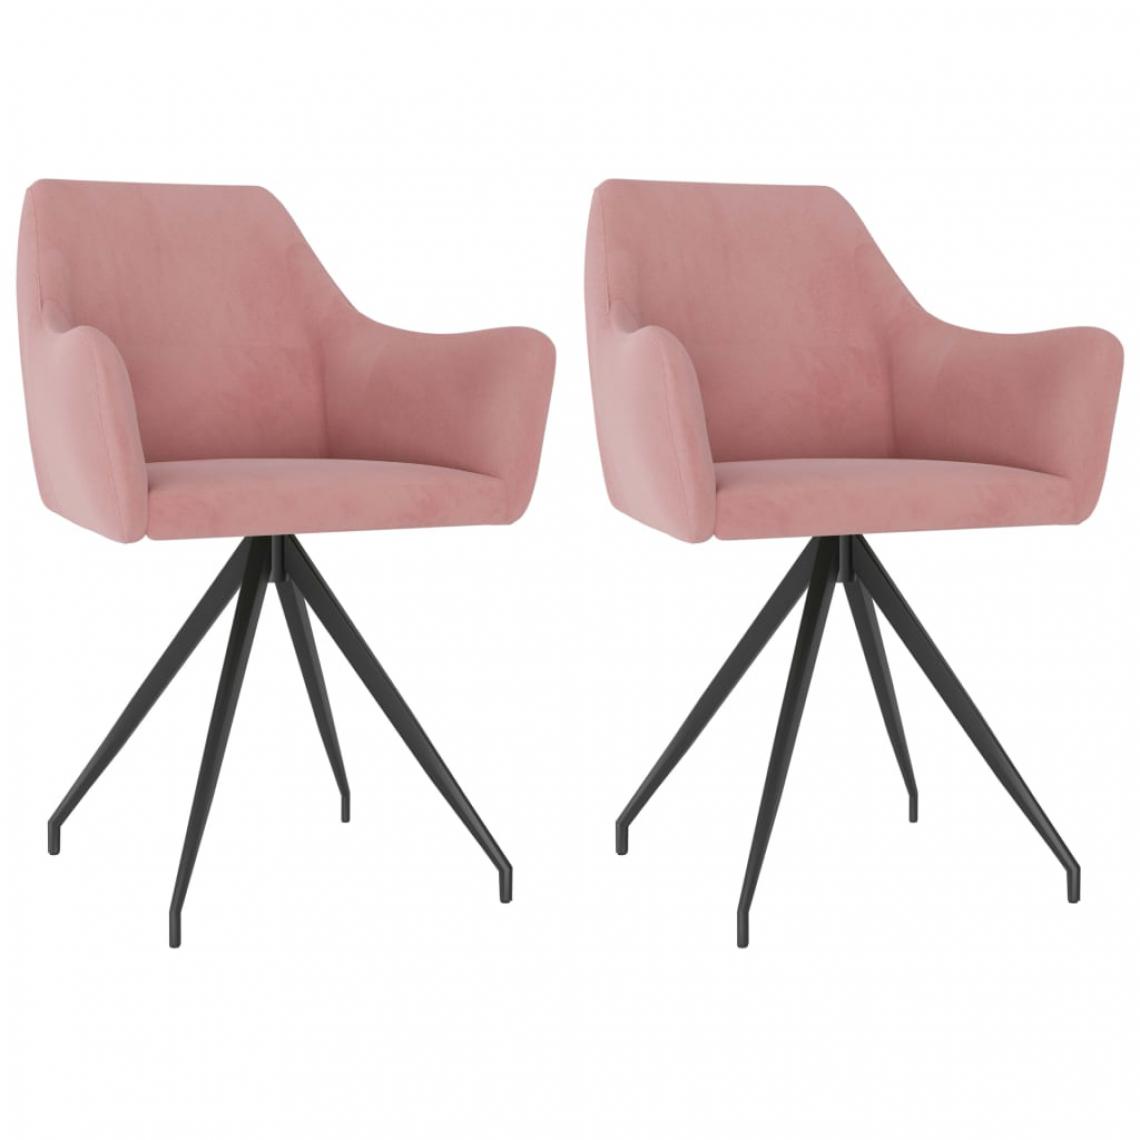 Icaverne - Contemporain Fauteuils et chaises serie Alger Chaises de salle à manger 2 pcs Rose Velours - Chaises